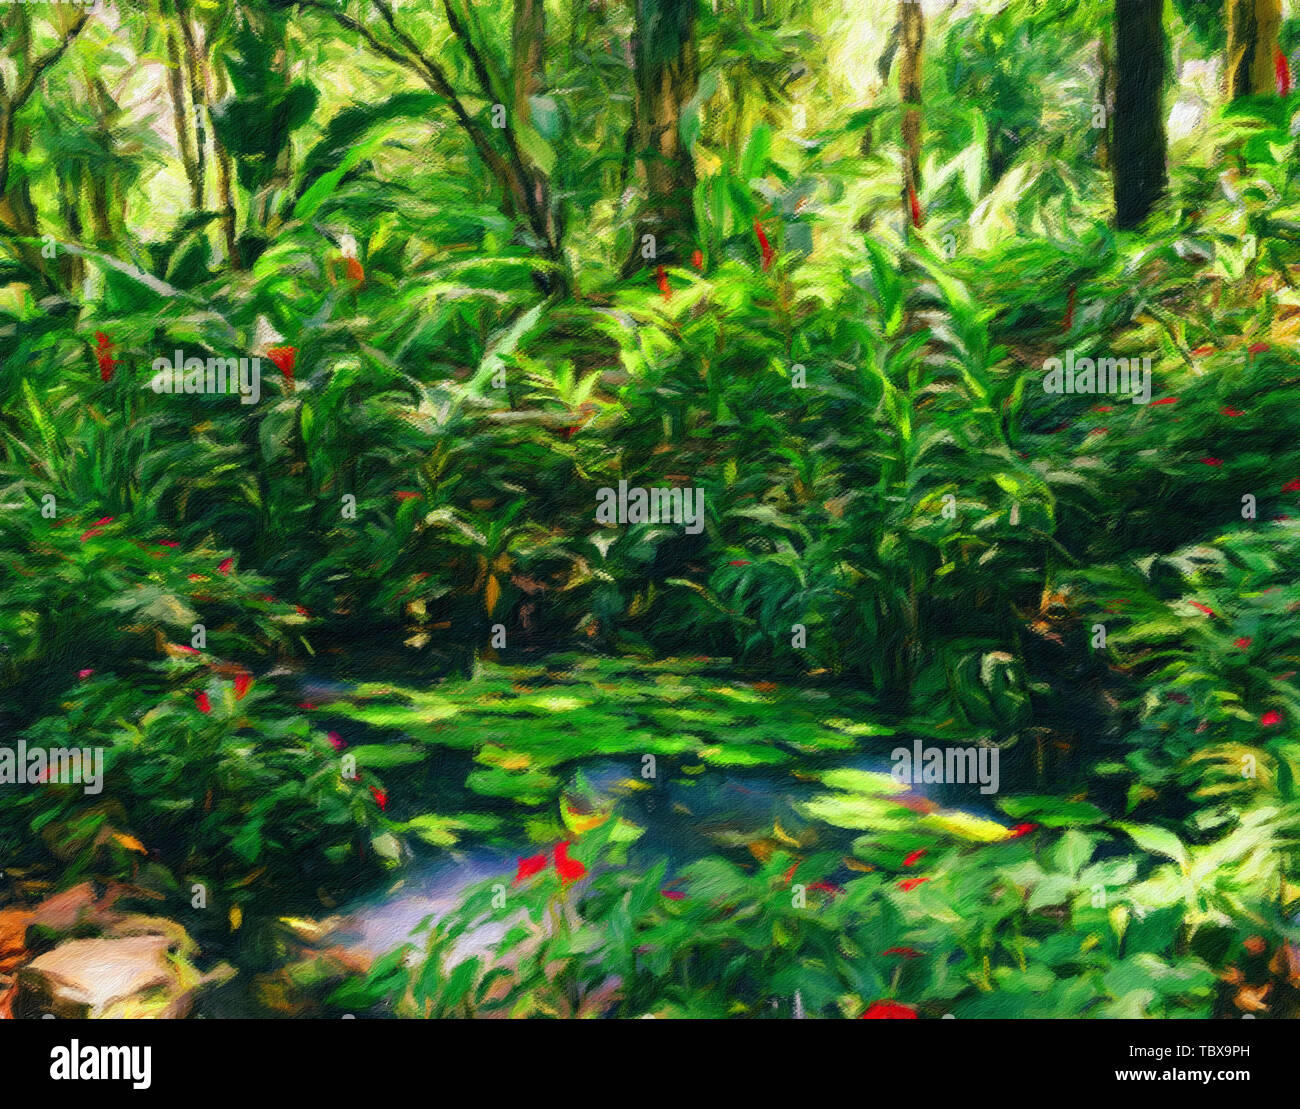 Seerosen, Nymphaeaceae, in üppigen tropischen brasilianischen Regenwald -  Claude Monet Stil digitale Manipulation Öl auf Leinwand impressionistischen  Effekt Stockfotografie - Alamy